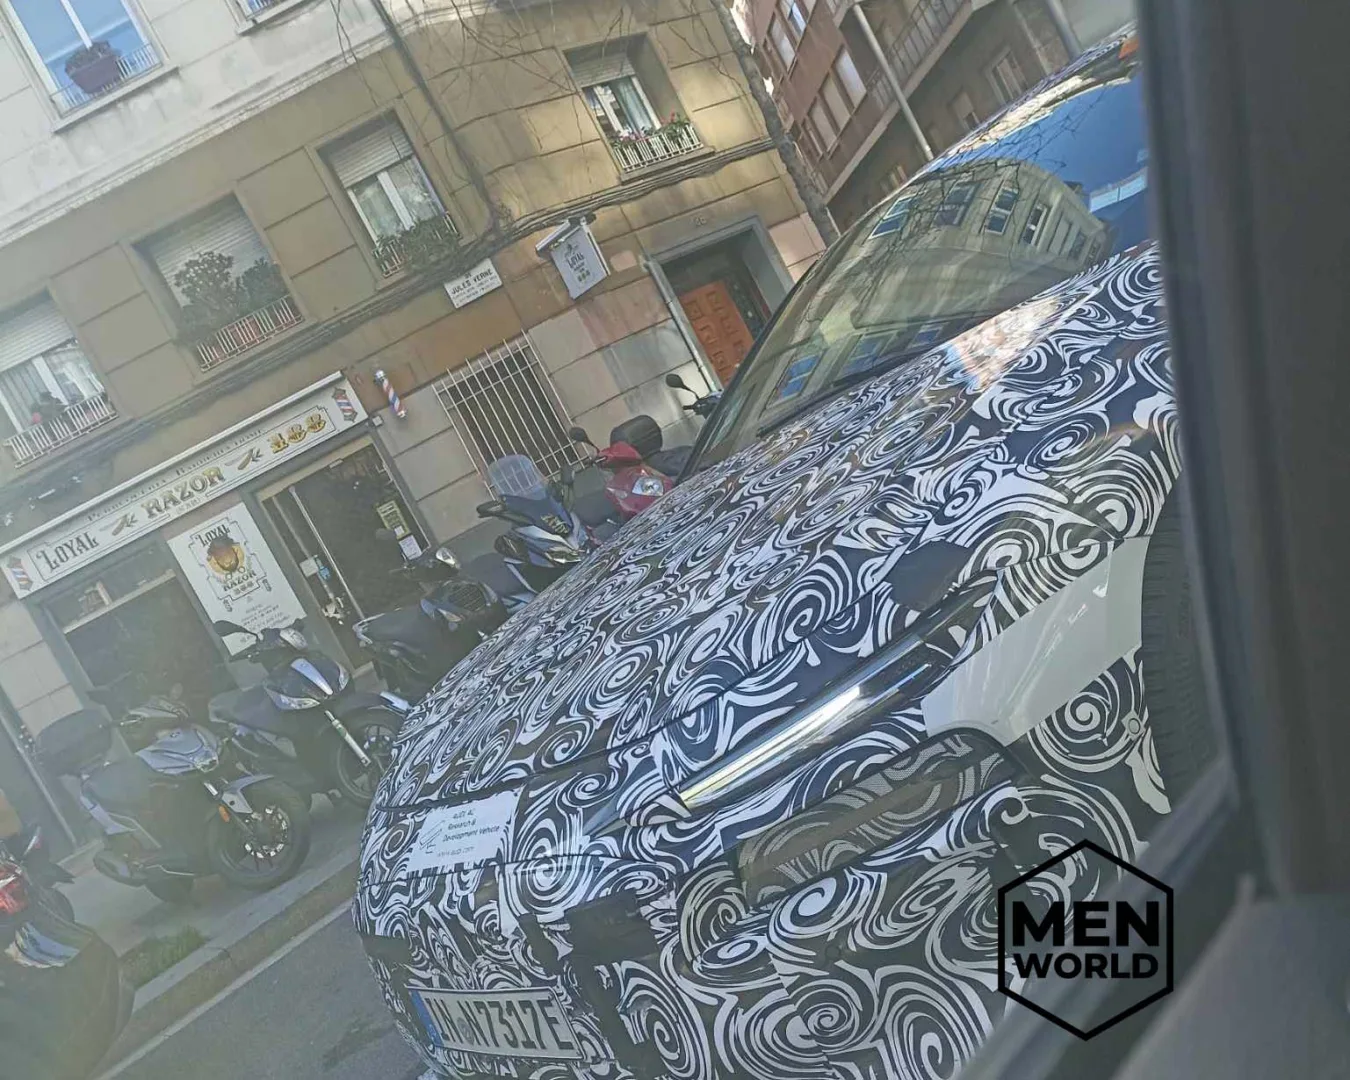 Nowe elektryczne Audi A6 e-tron widziane w Barcelonie.